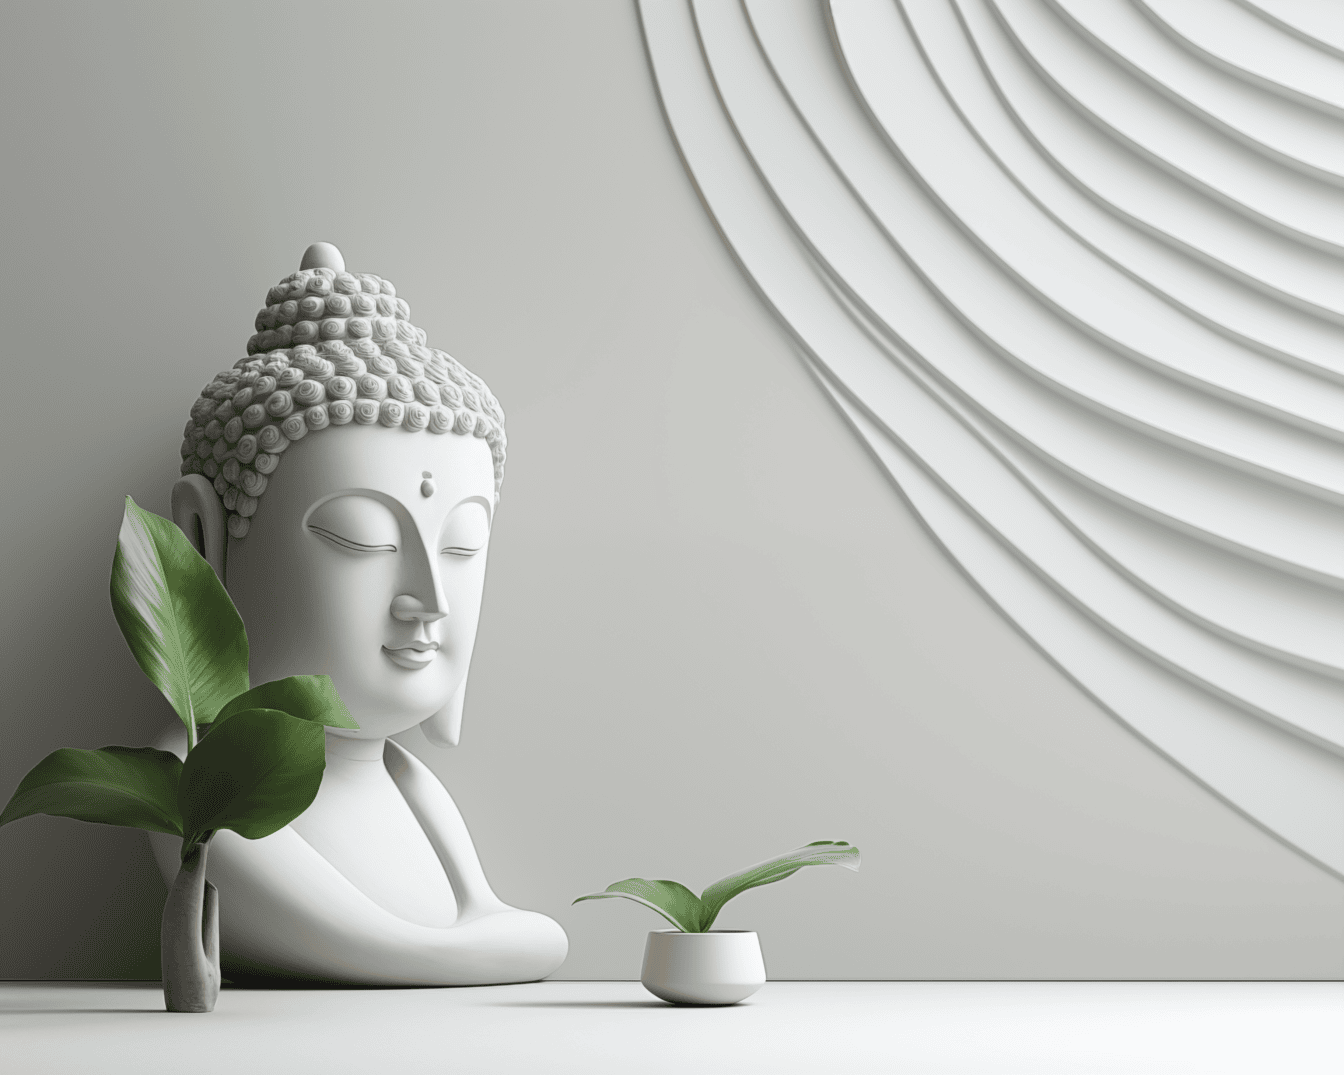 Minimalistyczny wystrój wnętrza z białą figurką Buddy obok wazonu i z nowoczesną dekoracją na białej ścianie